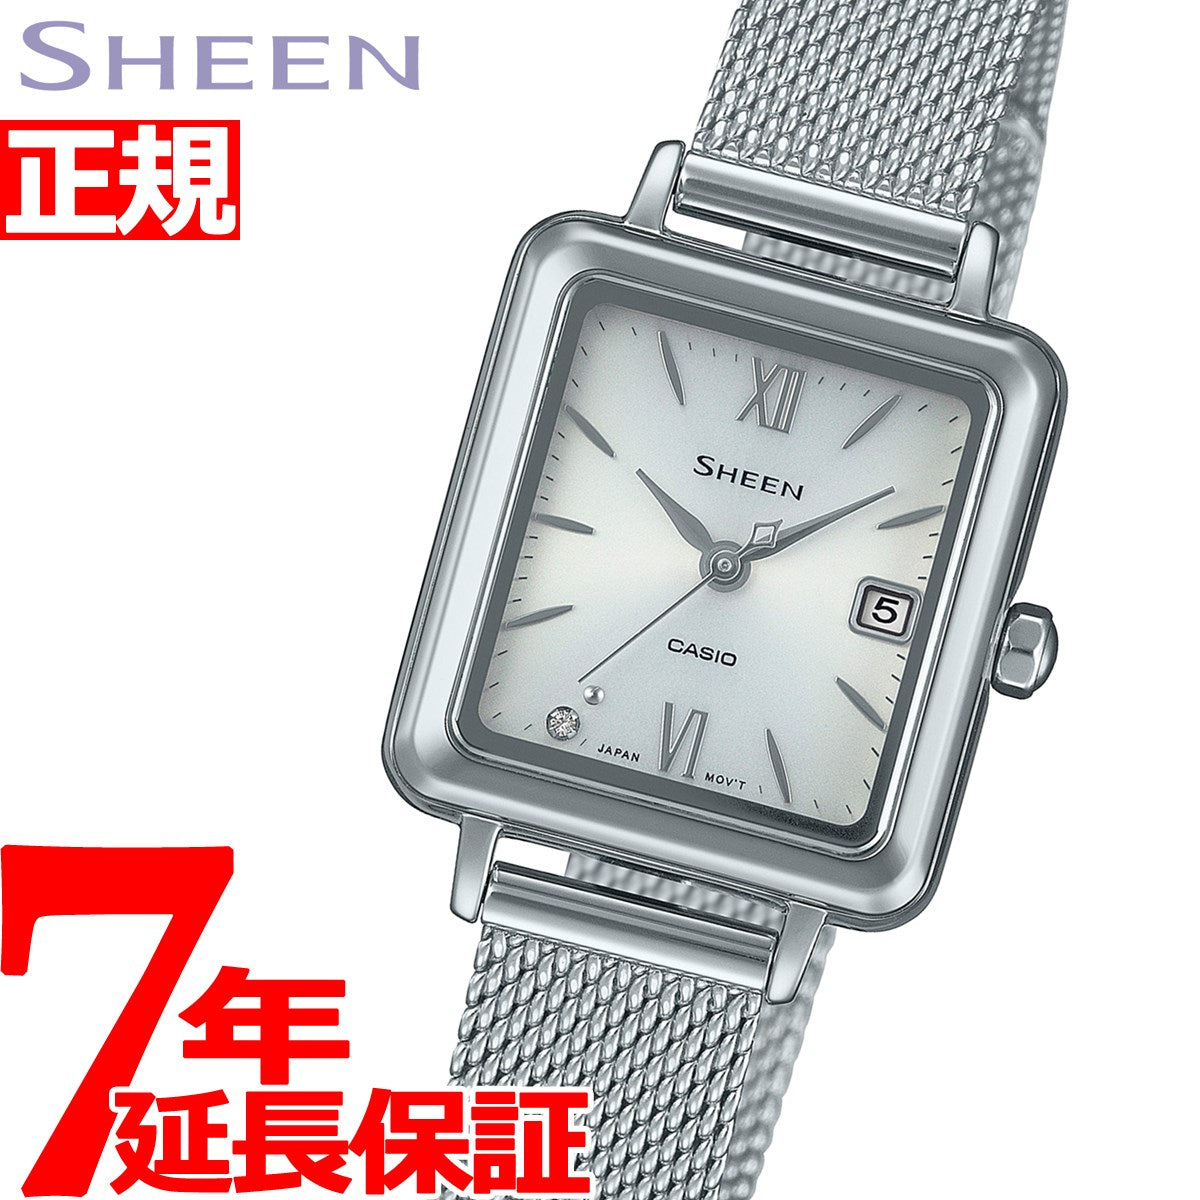 カシオ シーン CASIO SHEEN ソーラー 腕時計 レディース SHS-D400M-7AJF